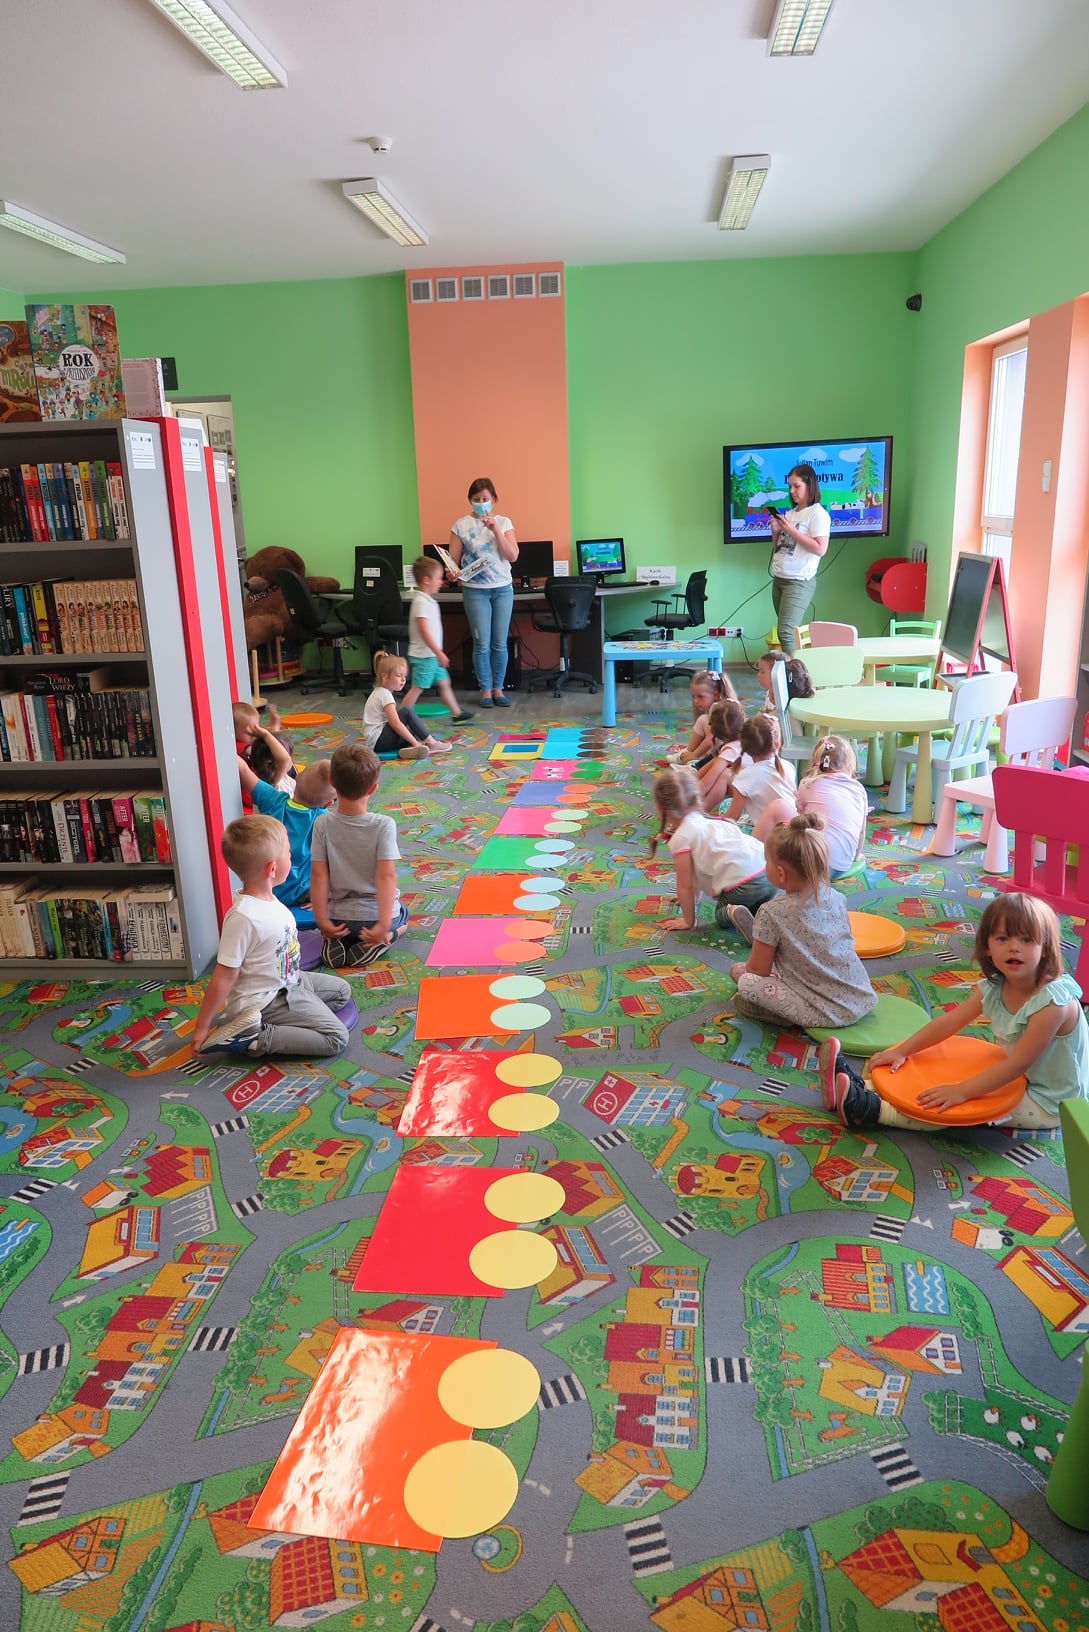 Dzieci siedzą na podłodze w Oddziale dla dzieci w dwóch rzędach. Pomiędzy nimi rozłożone są papierowe kolorowe wagony. Bibliotekarka z książką w ręku stoi przed nimi. Druga kobieta, po prawej stronie robi zdjęcie dzieciom.